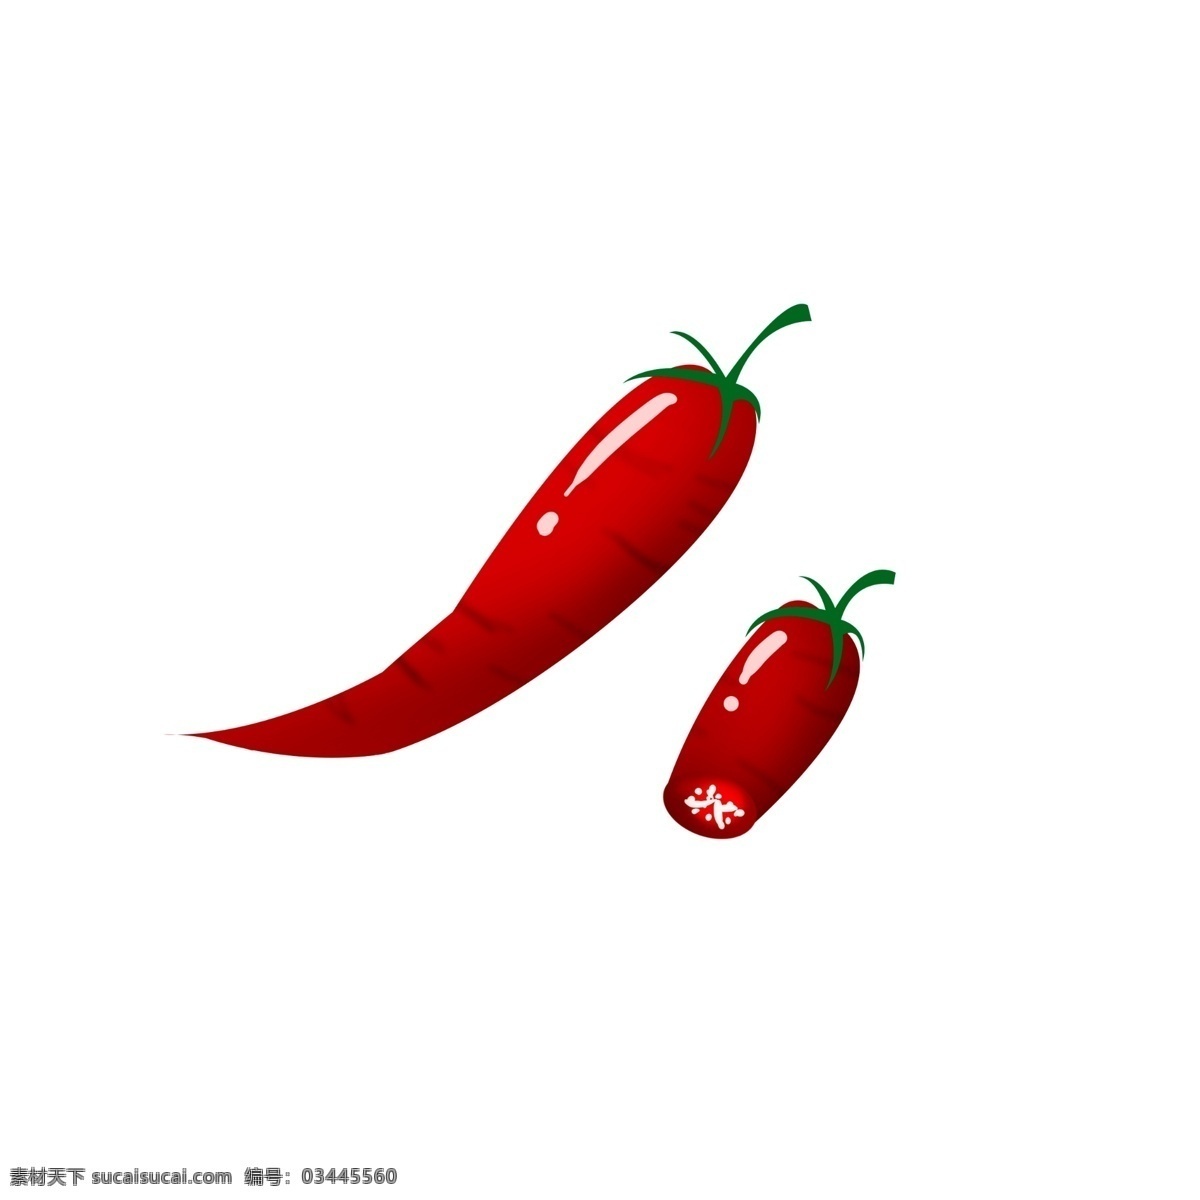 手绘 蔬菜 辣椒 插画 新鲜的蔬菜 卡通插画 手绘蔬菜插画 切开的辣椒 红色的辣椒 辛辣的调料